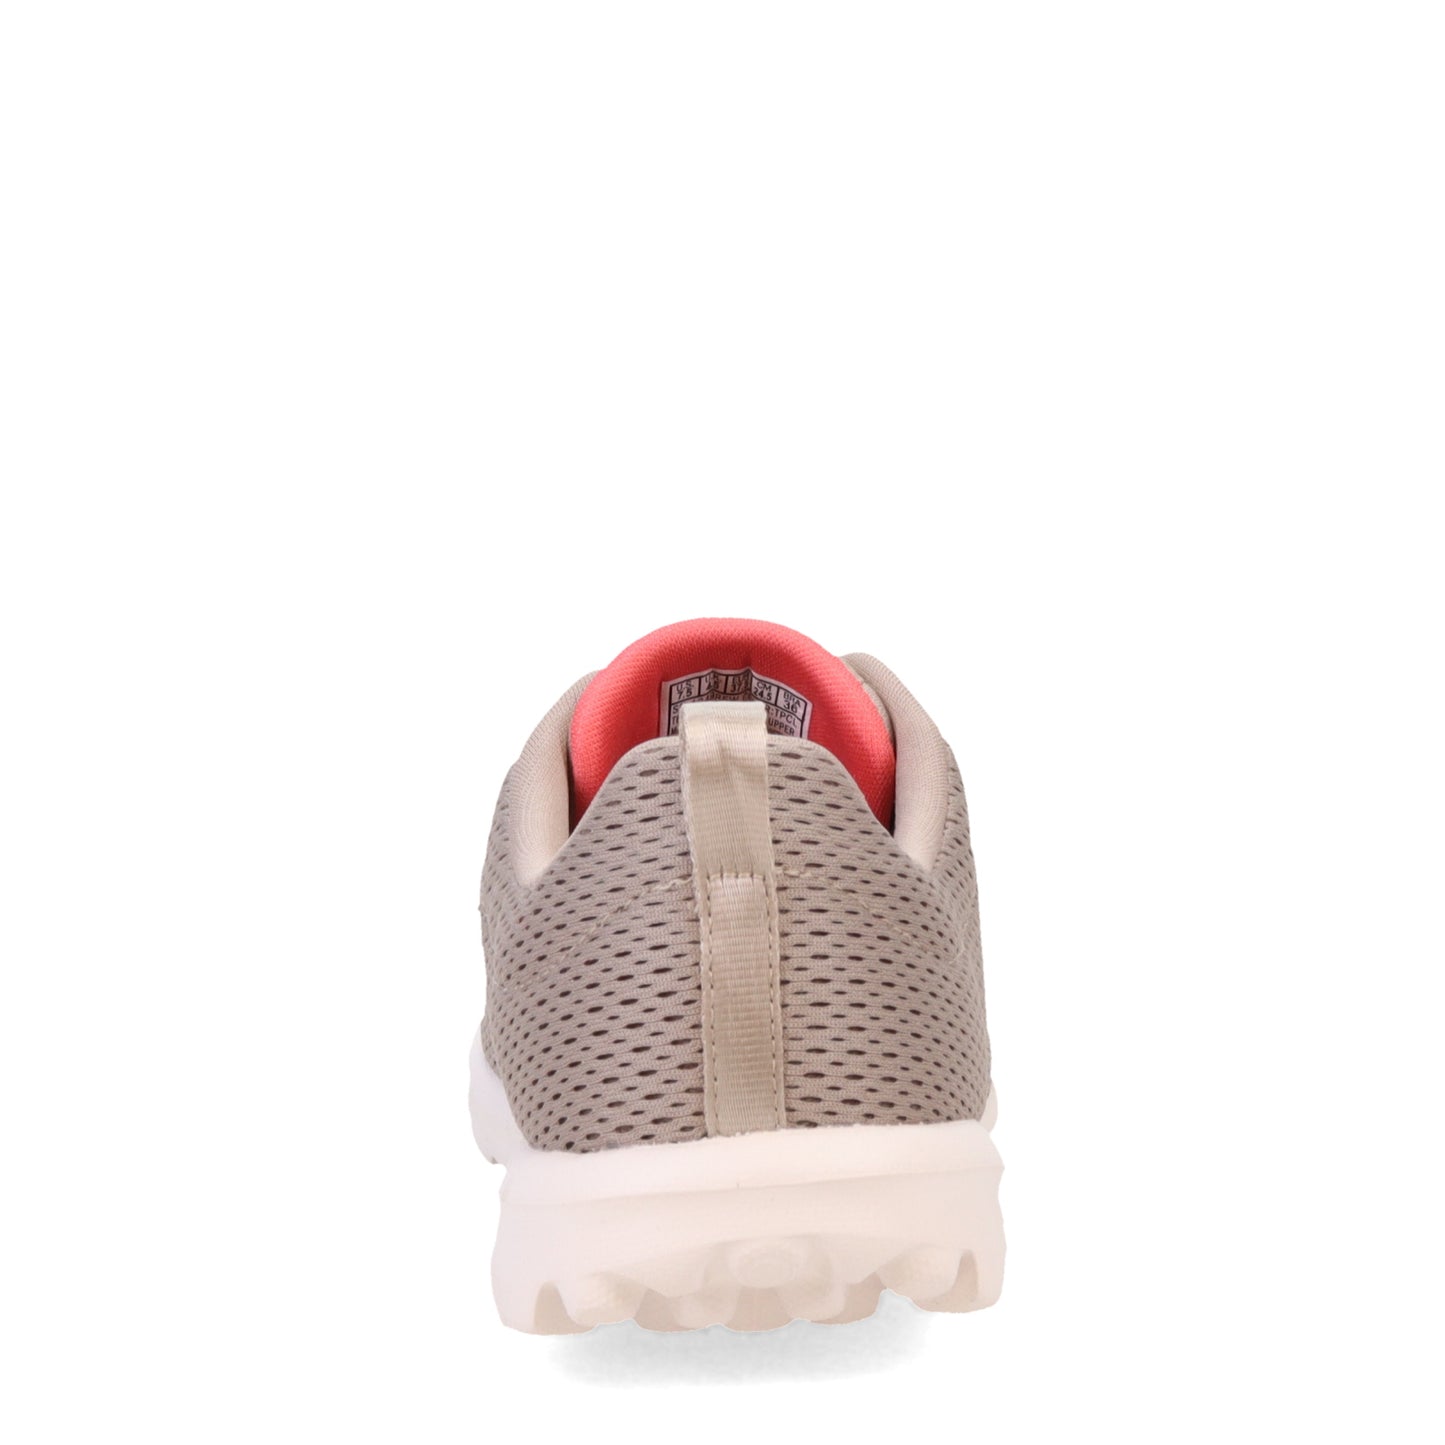 Peltz Shoes  Women's Skechers GO WALK Travel - Fun Journey Sneaker TAUPE 124985-TPCL